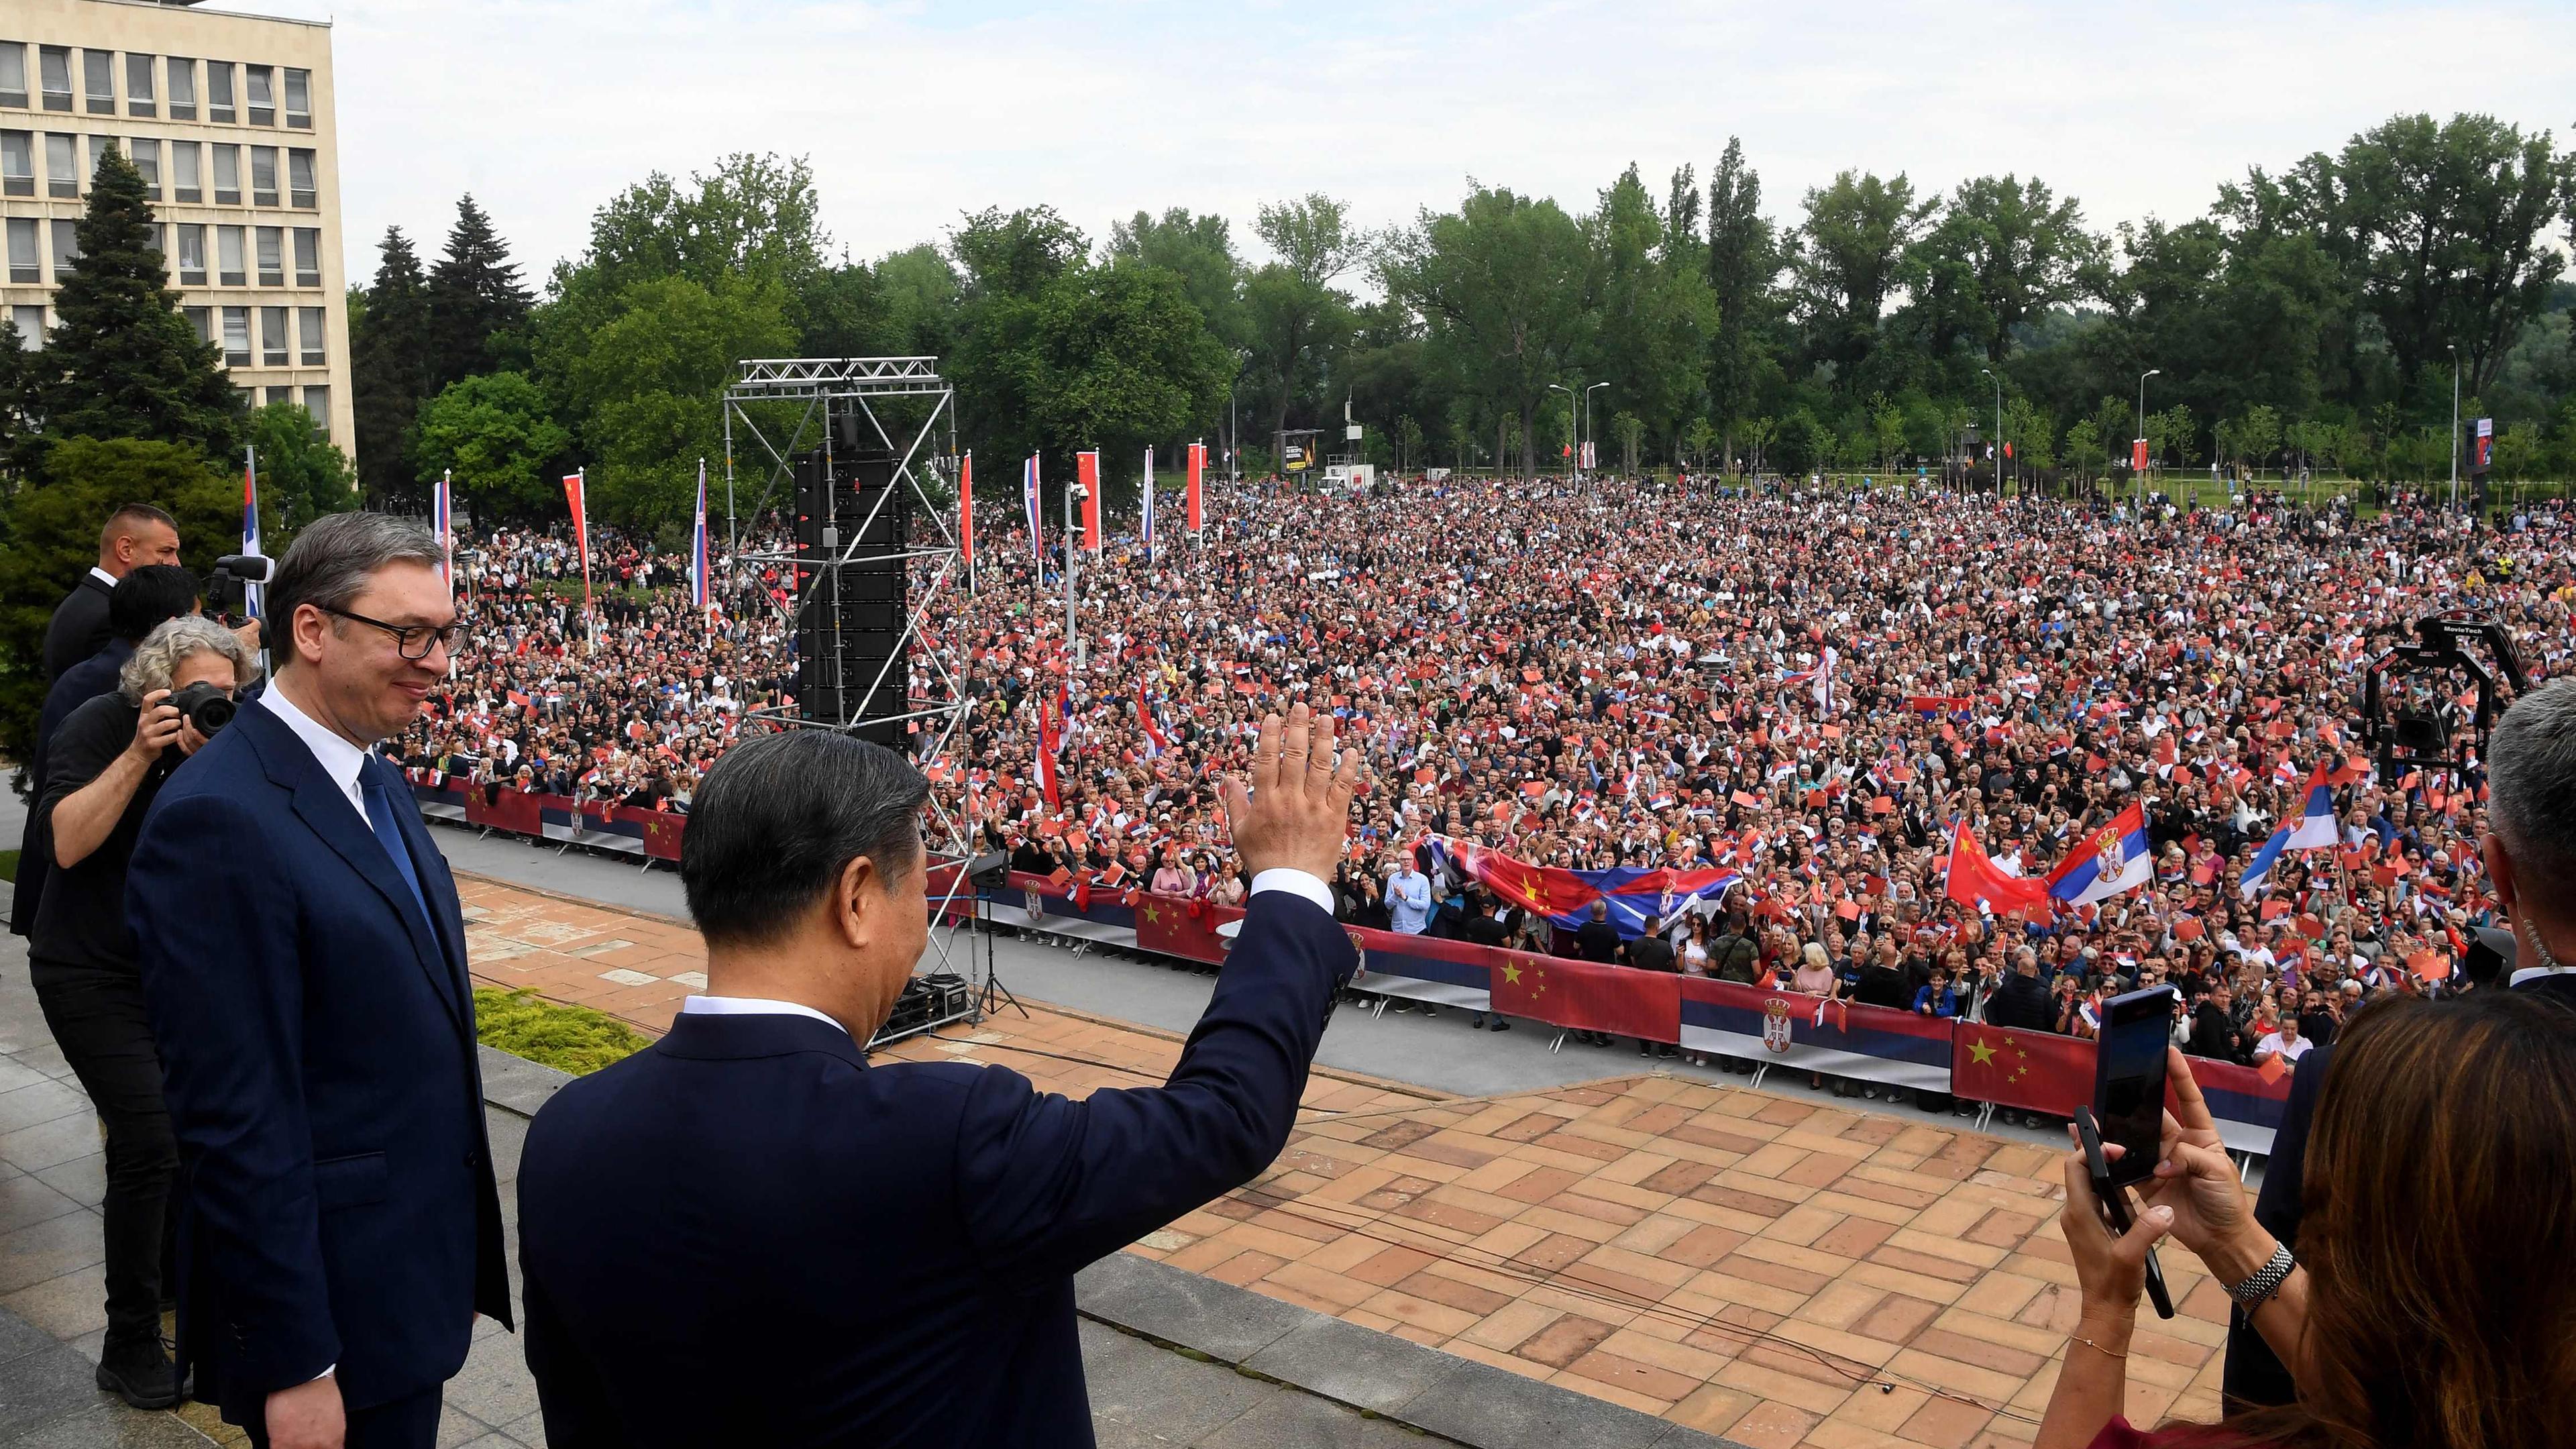 Der serbische Präsident Aleksandar Vučić bot seinem Staatsgast Xi Jinping einen überaus freundlichen Empfang.